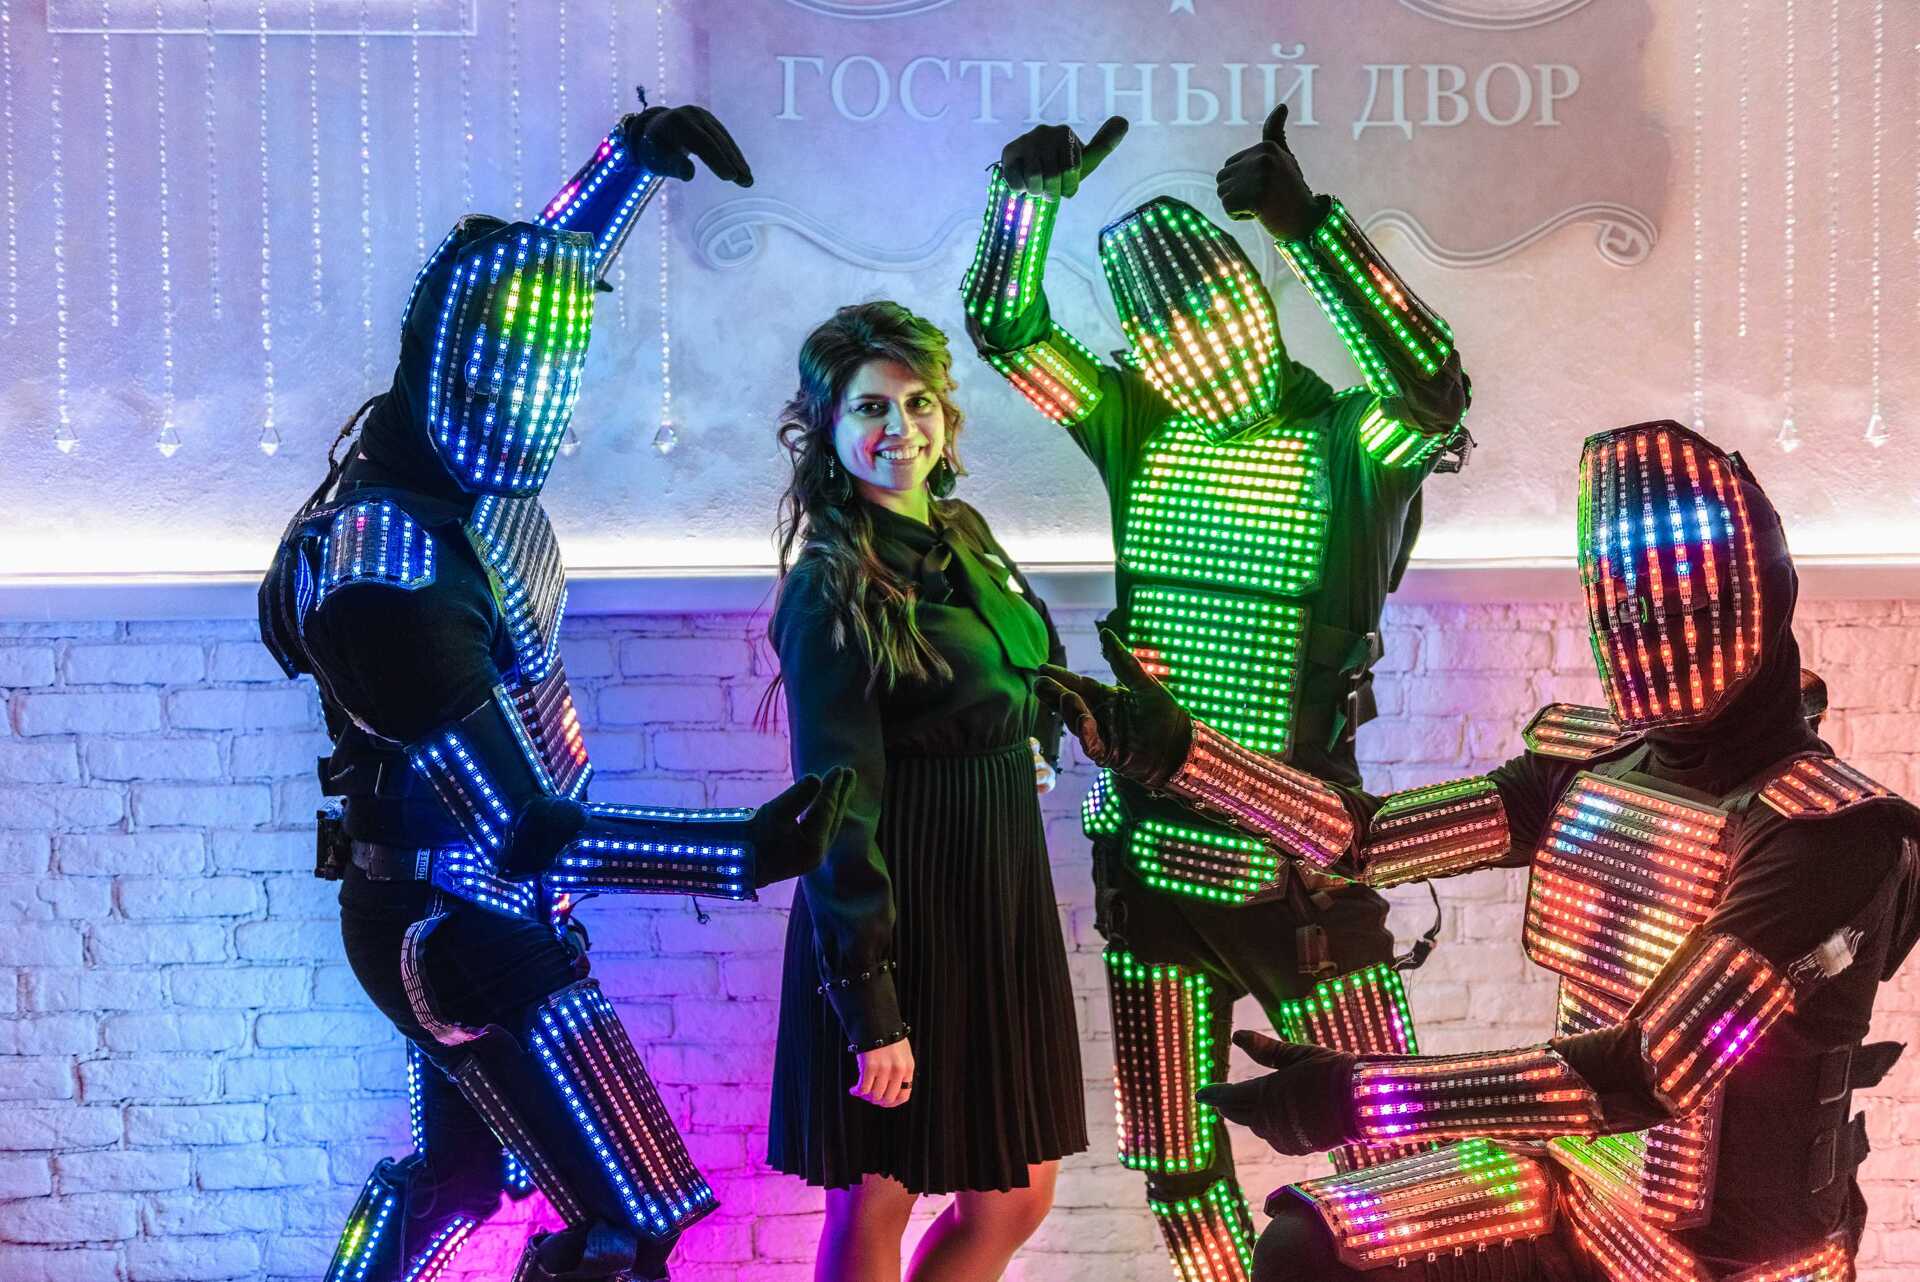 Аниматоры "Пиксельмены". Аврора - световое шоу, Новосибирск